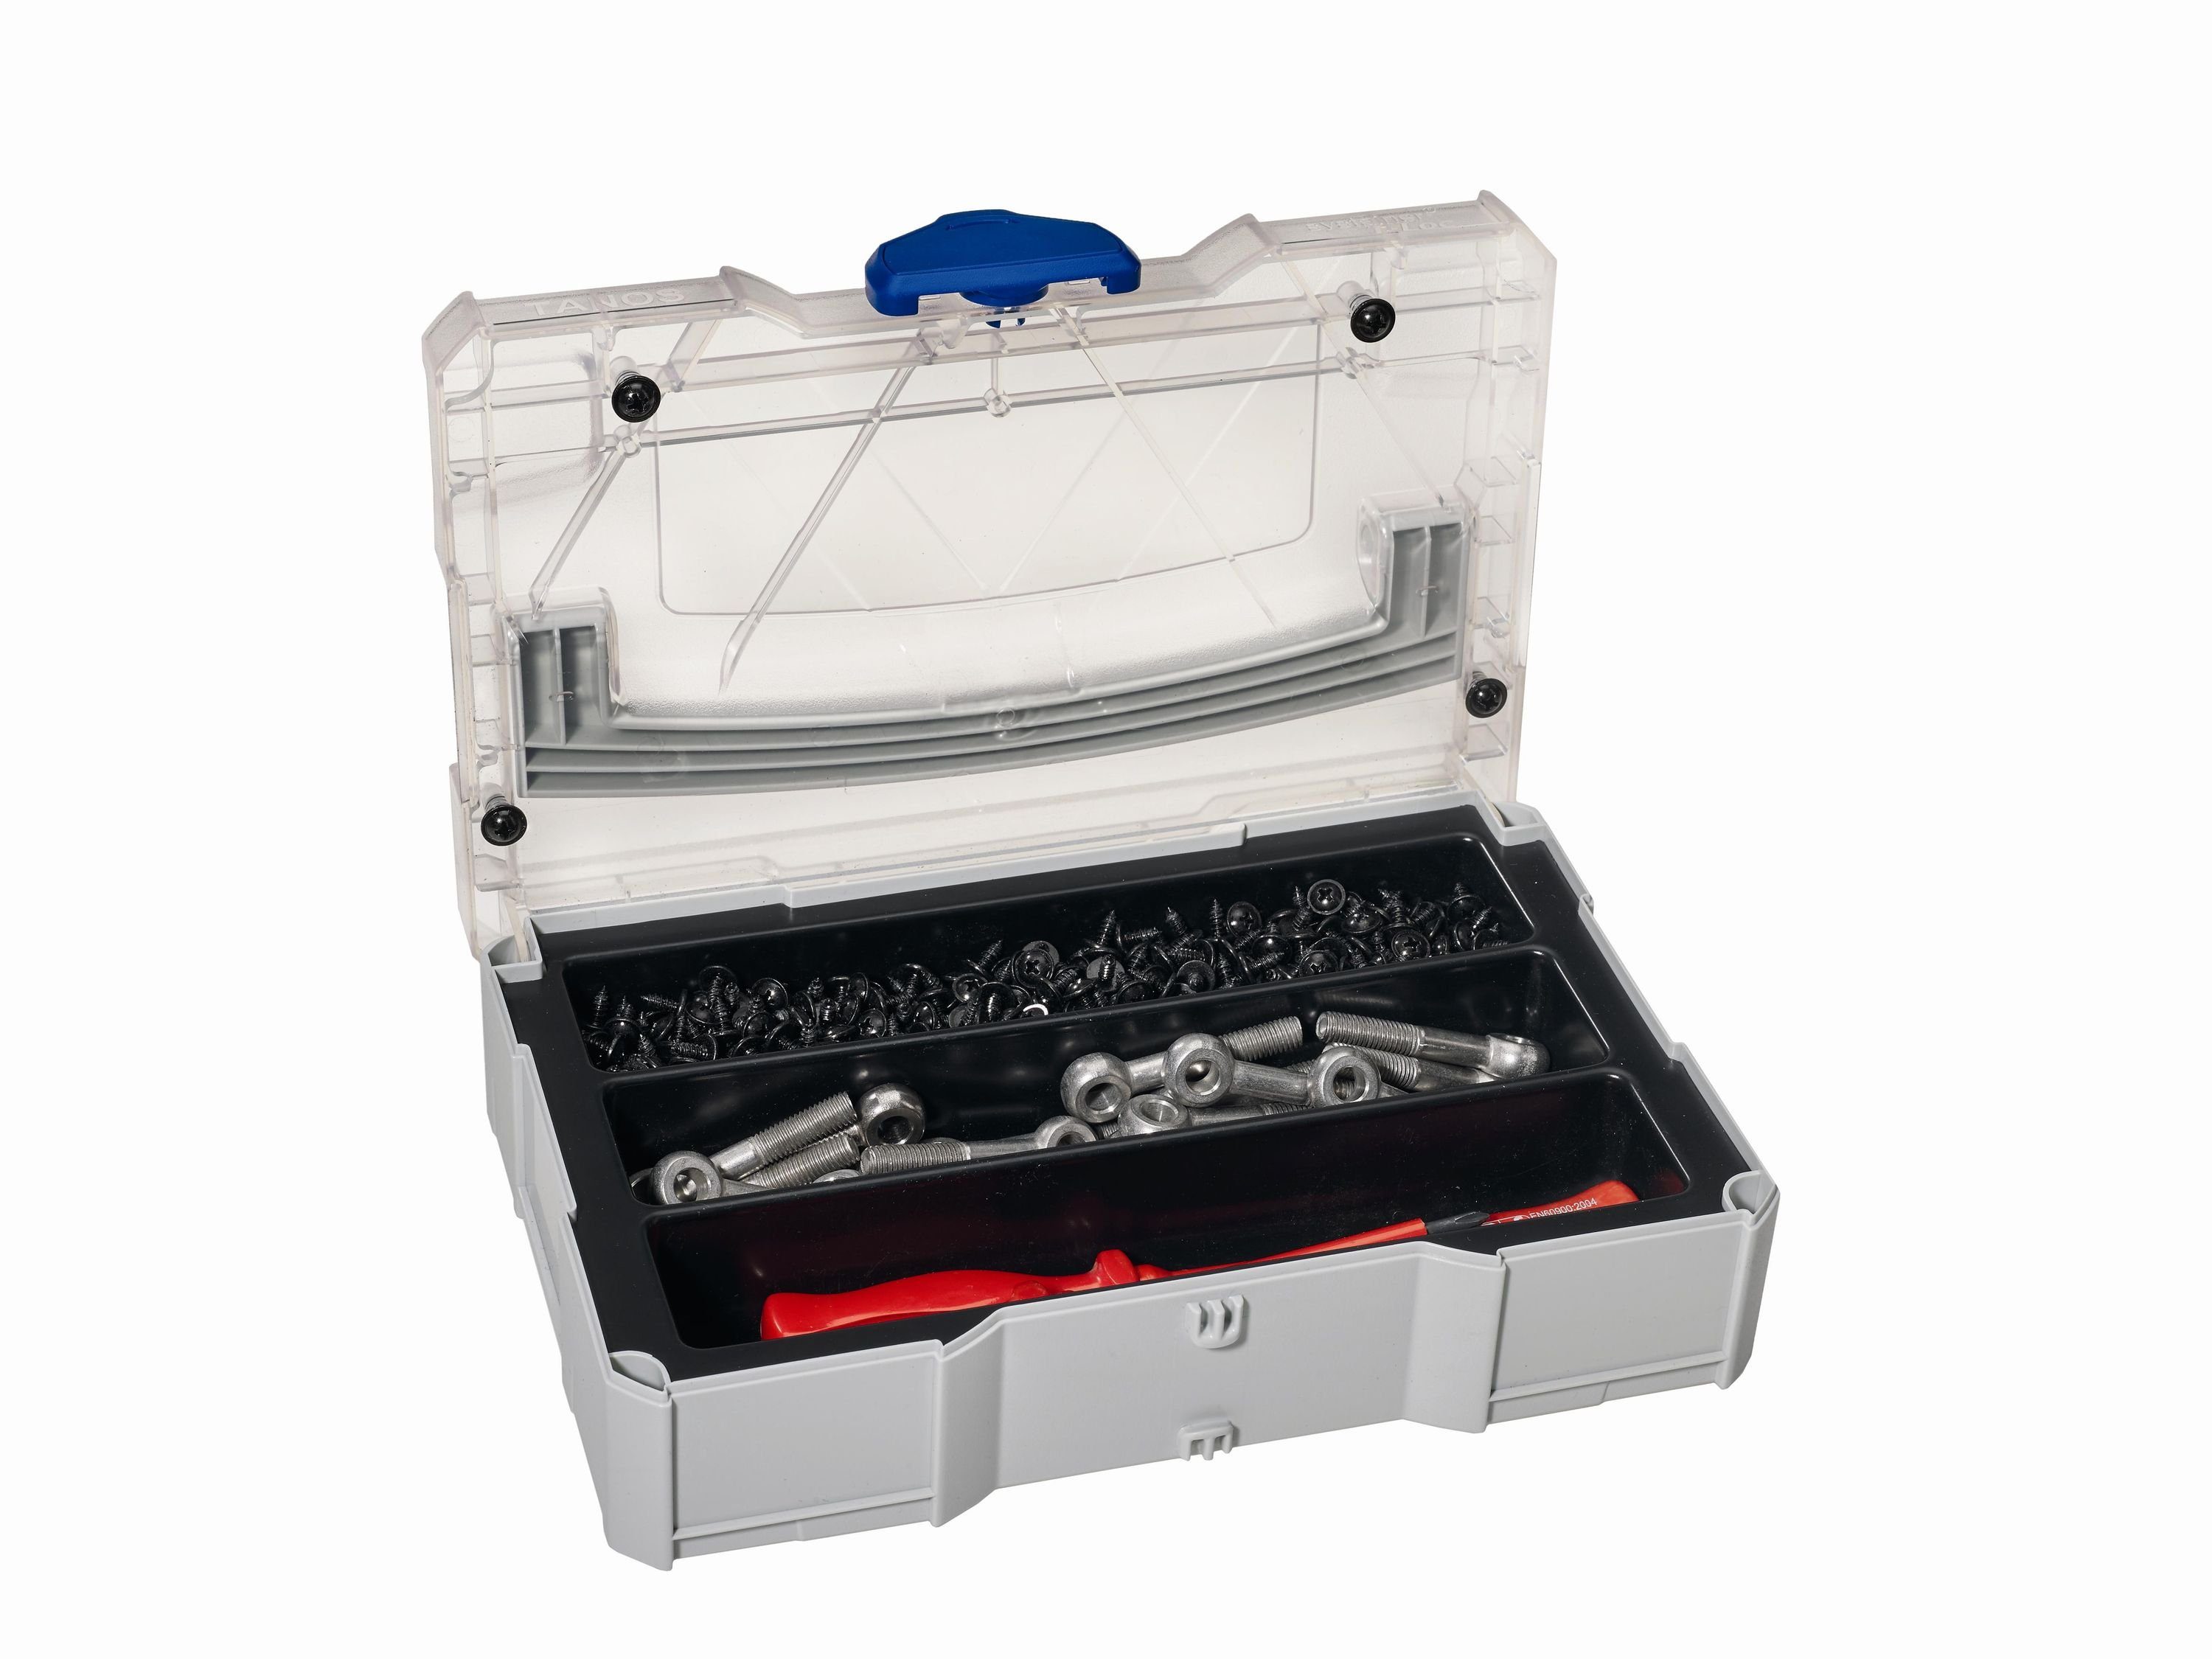 Tanos Werkzeugbox MINI-systainer® T-Loc I für Kleinteile mit 3-fach Einteilung mit transparentem Deckel, transparenter Abdeckung und Tiefziehteil 3-fach